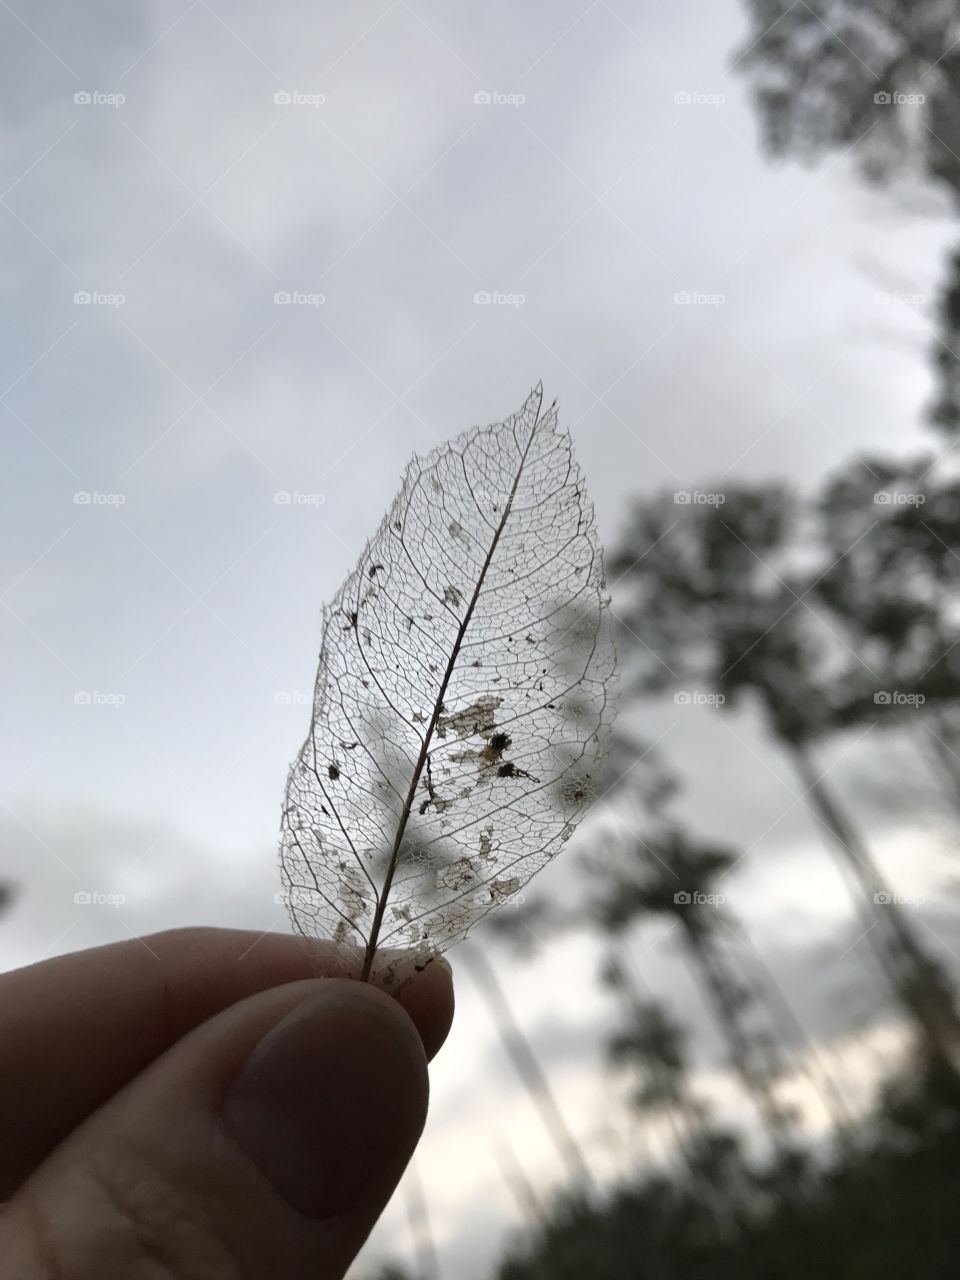 Transparent leaf and sky